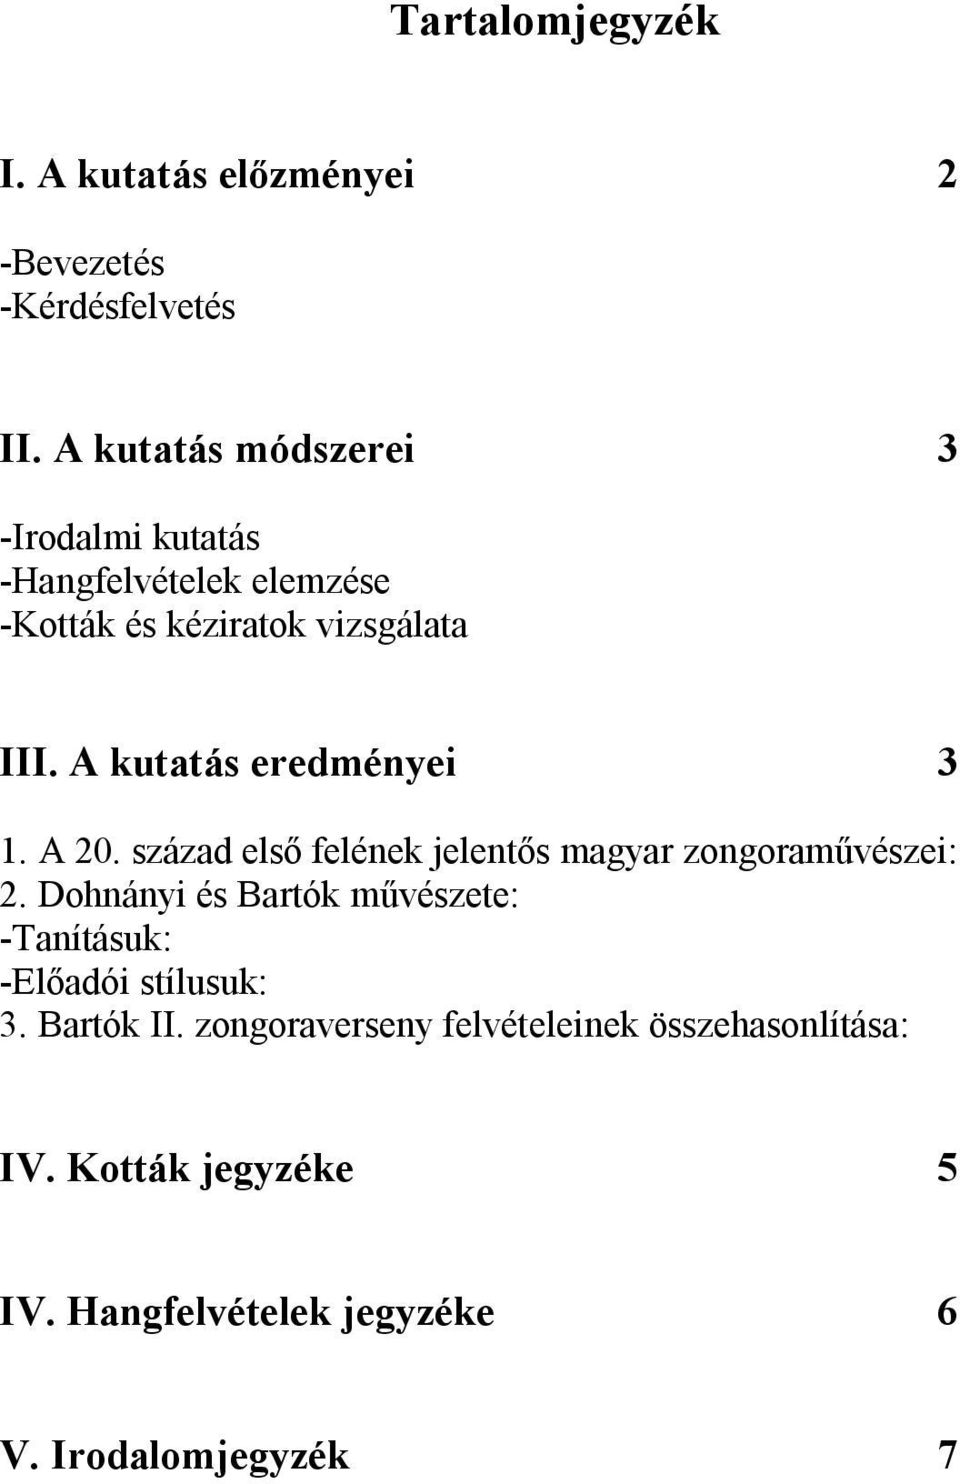 A kutatás eredményei 3 1. A 20. század első felének jelentős magyar zongoraművészei: 2.